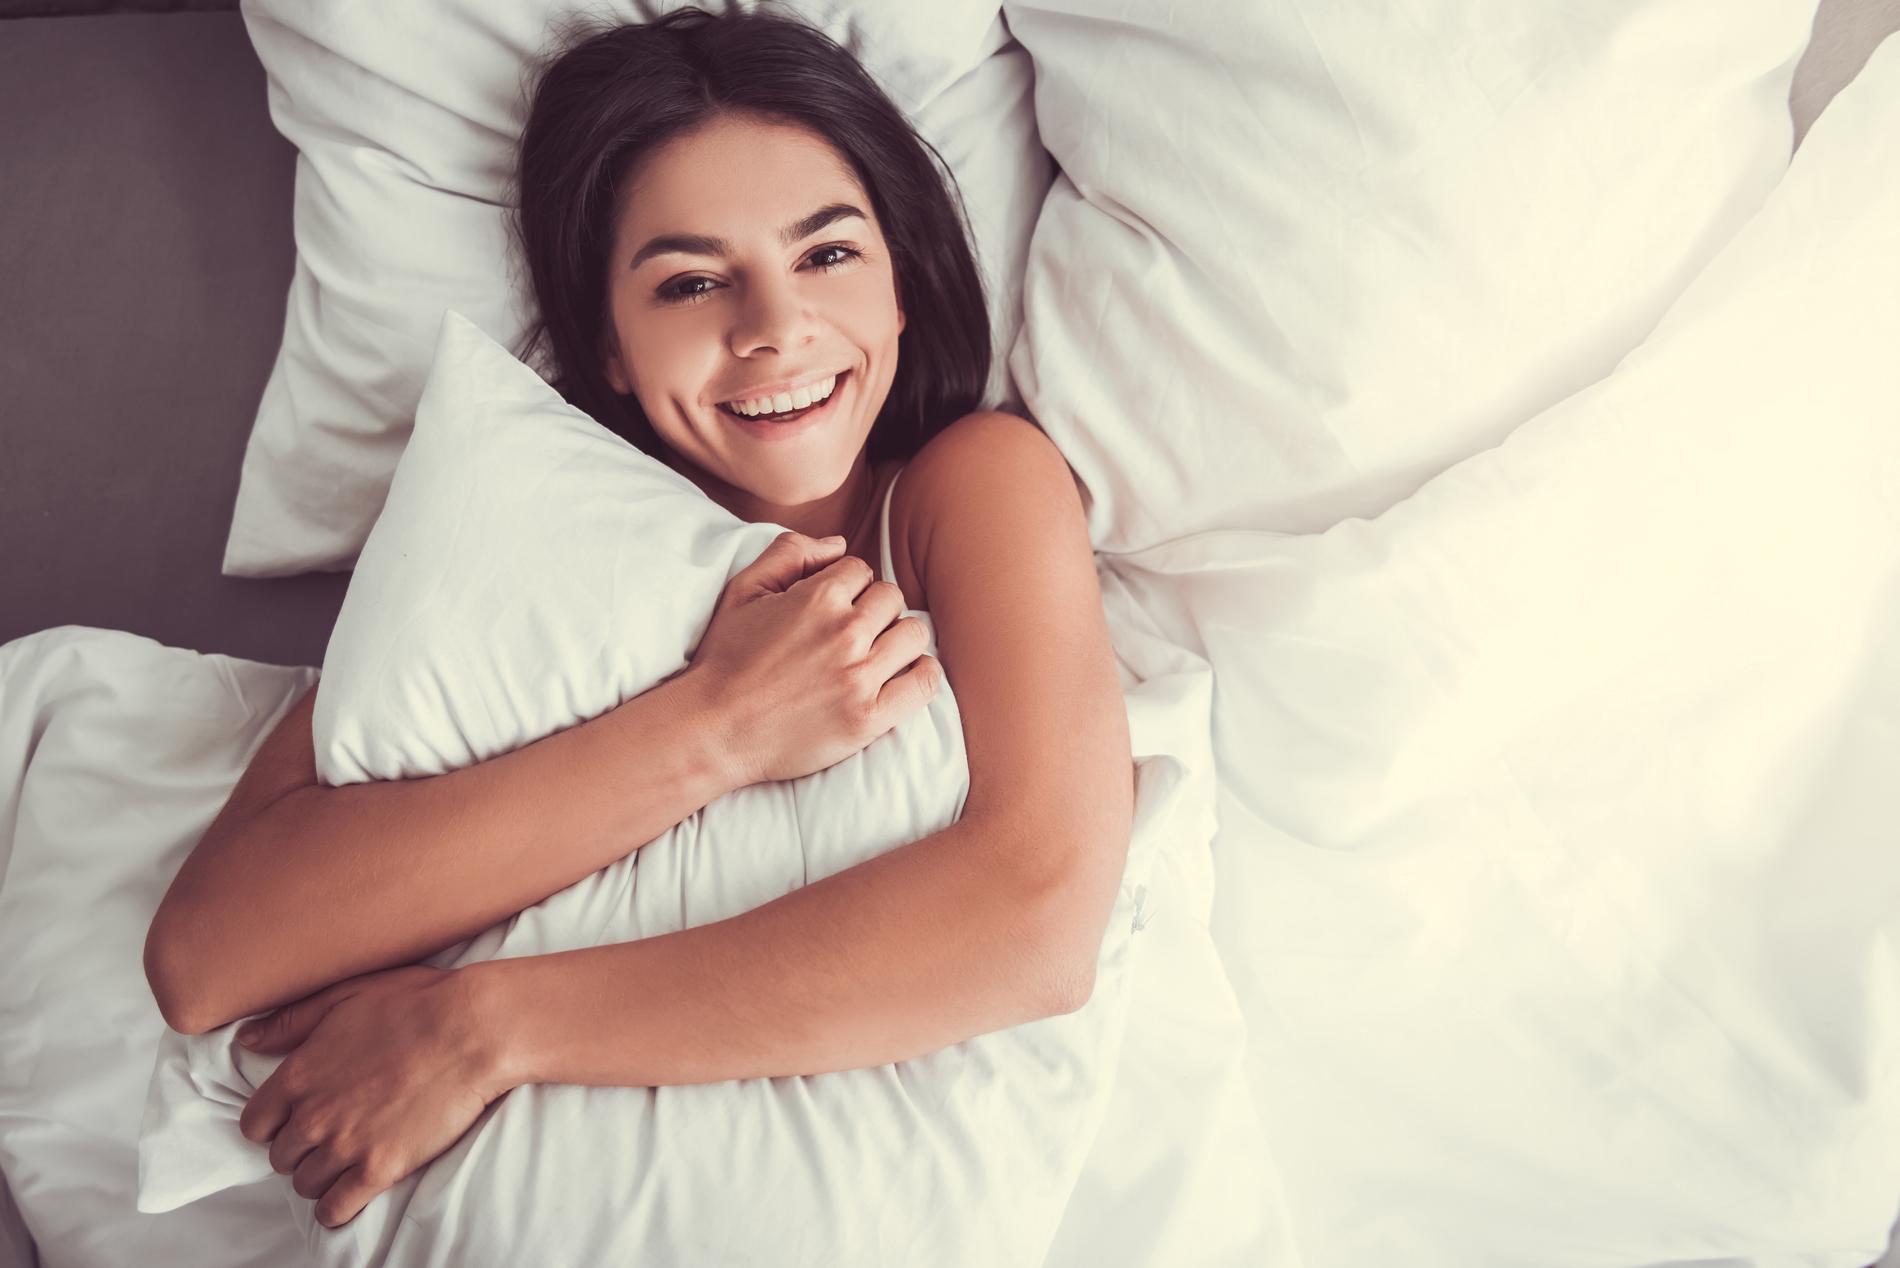 Gode rutiner sørger for bedre søvn. Her får du noen gode råd!